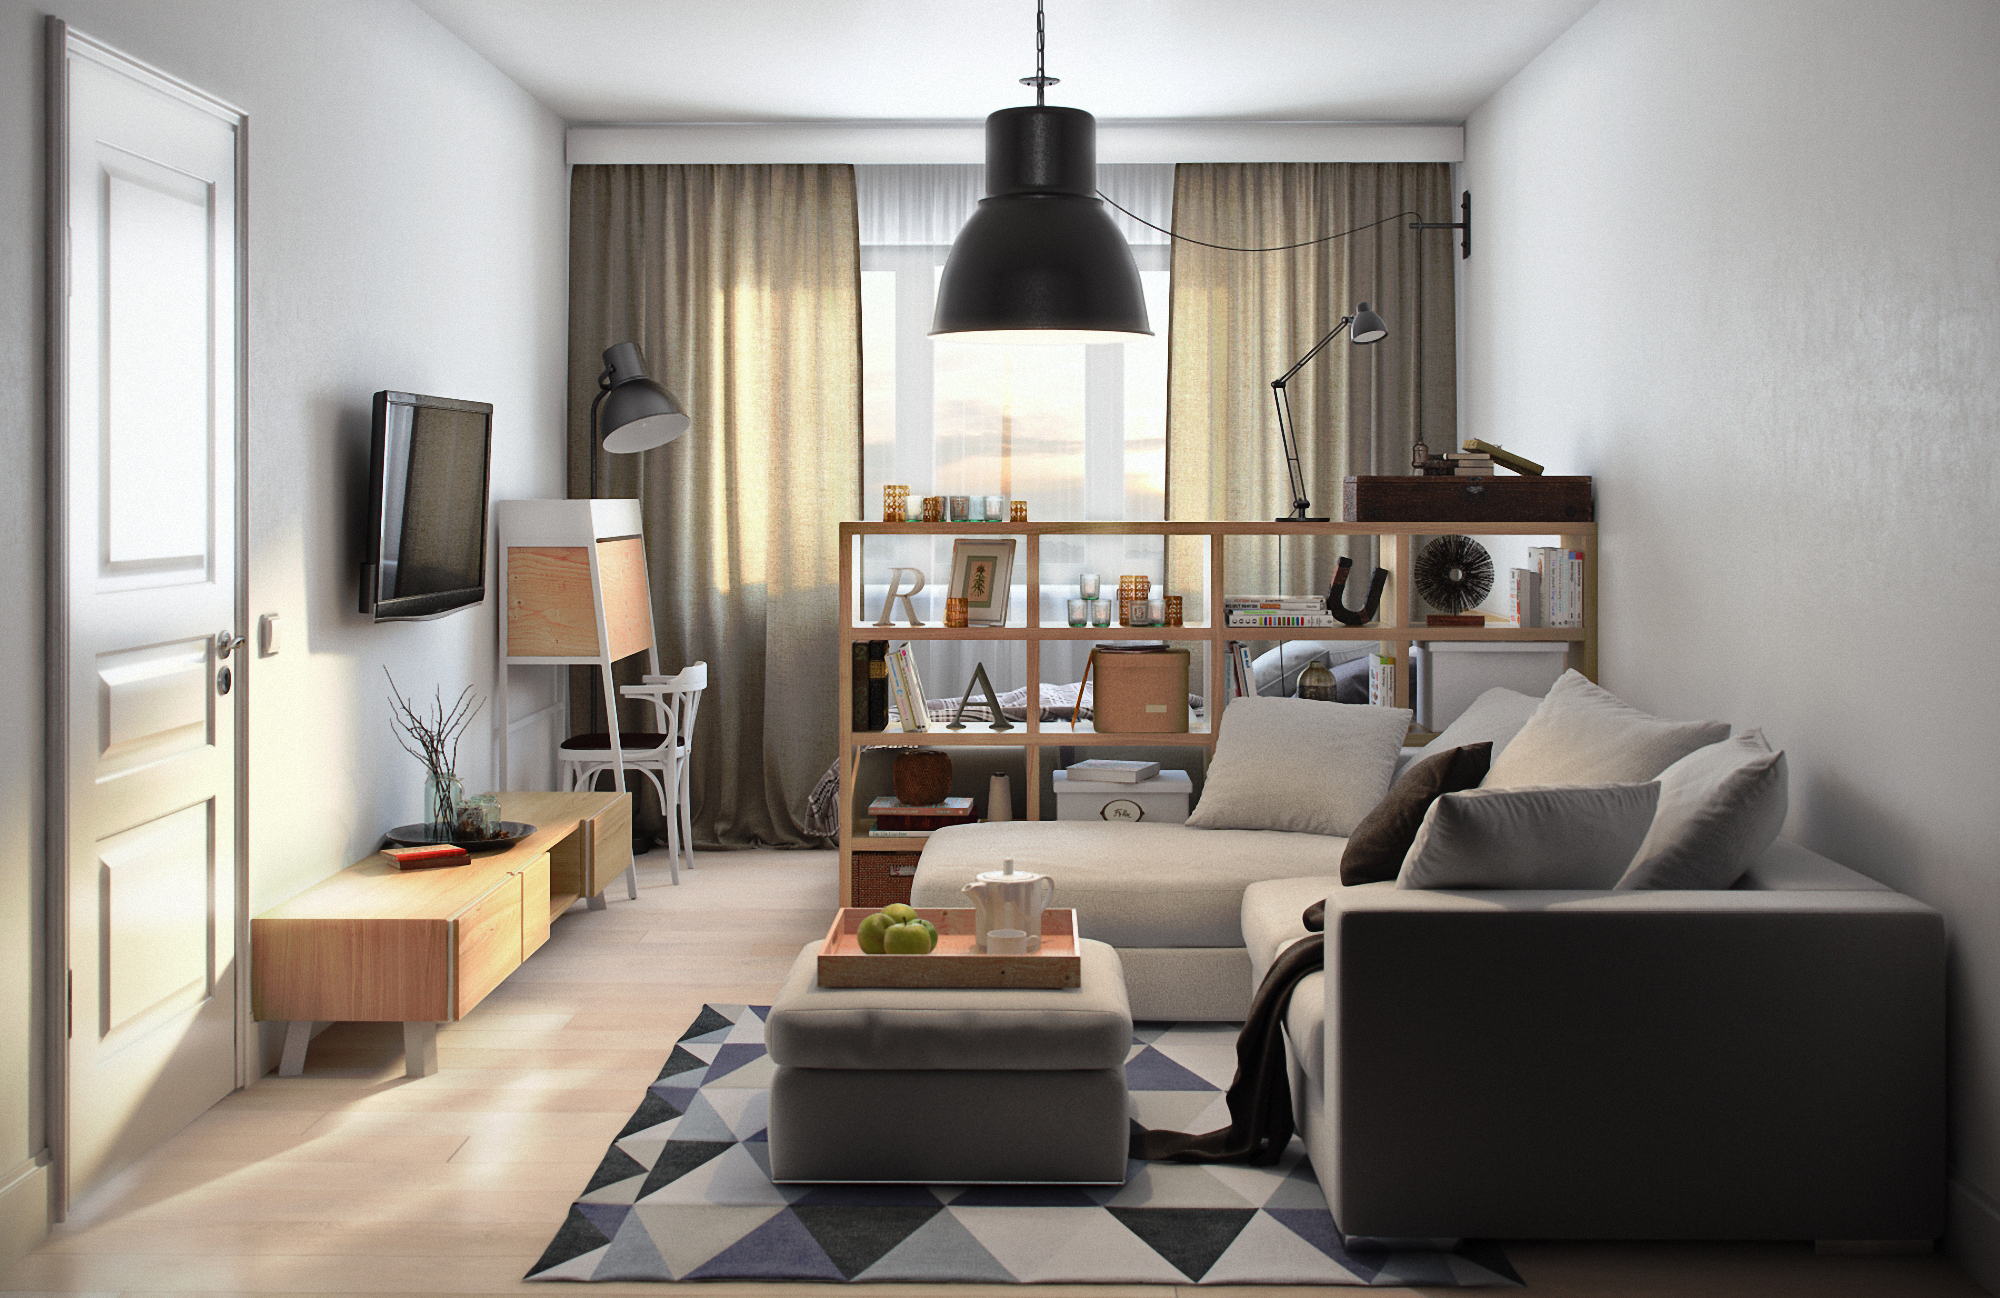 Дизайн-проект интерьера однокомнатной квартиры в стандартной девятиэтажке